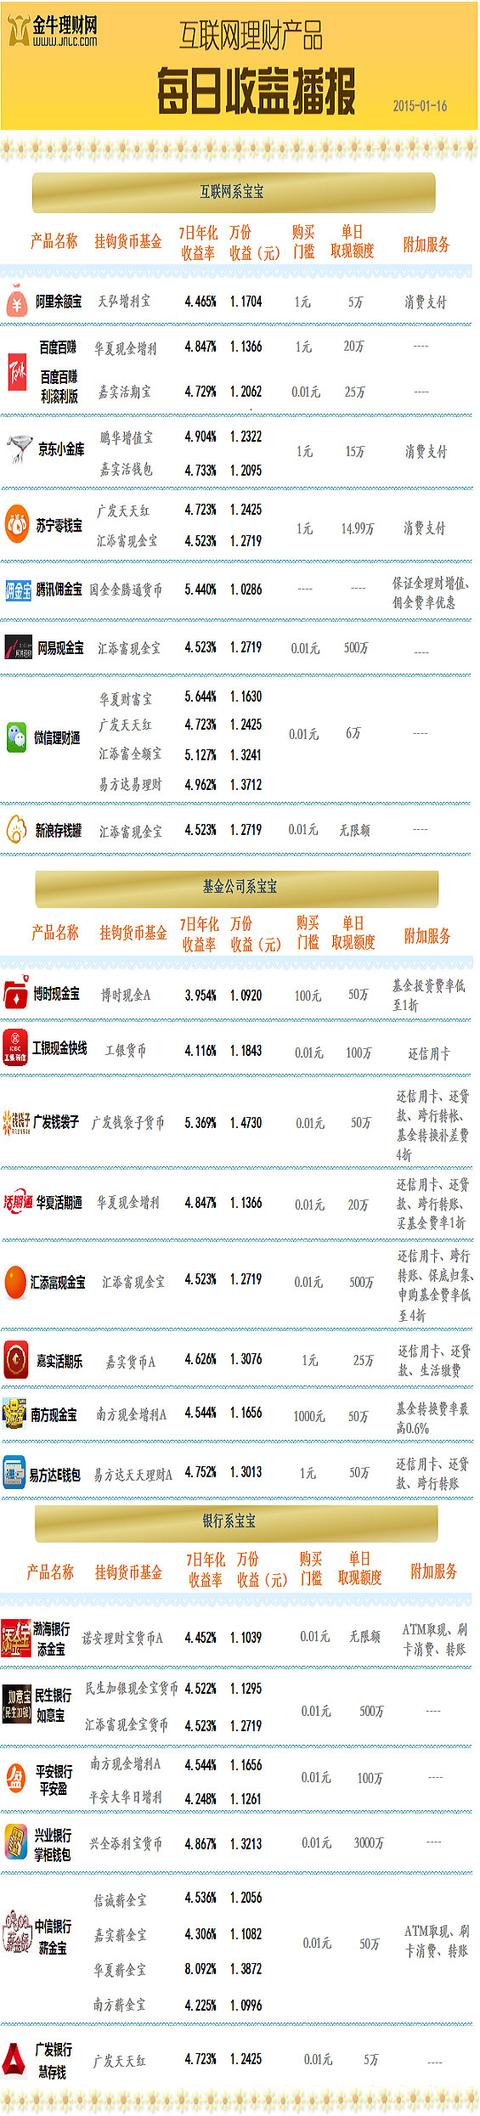 1月16日理财产品播报：华夏薪金宝收益8.09%仍居首